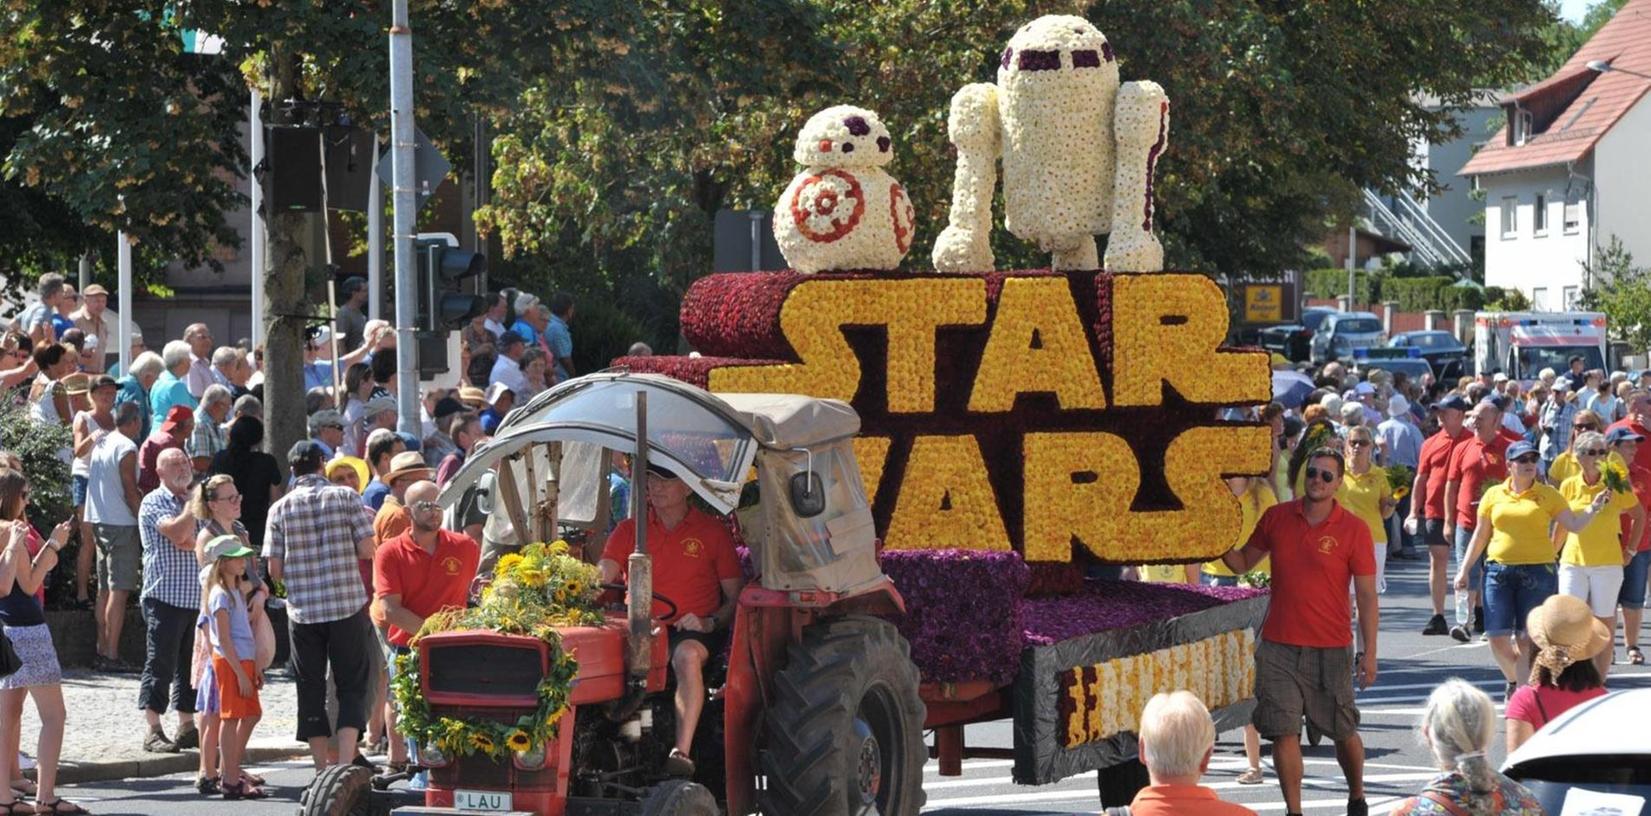 Auch der "Star Wars"-Wagen zog die Blicke der rund 28.000 Besucher an.